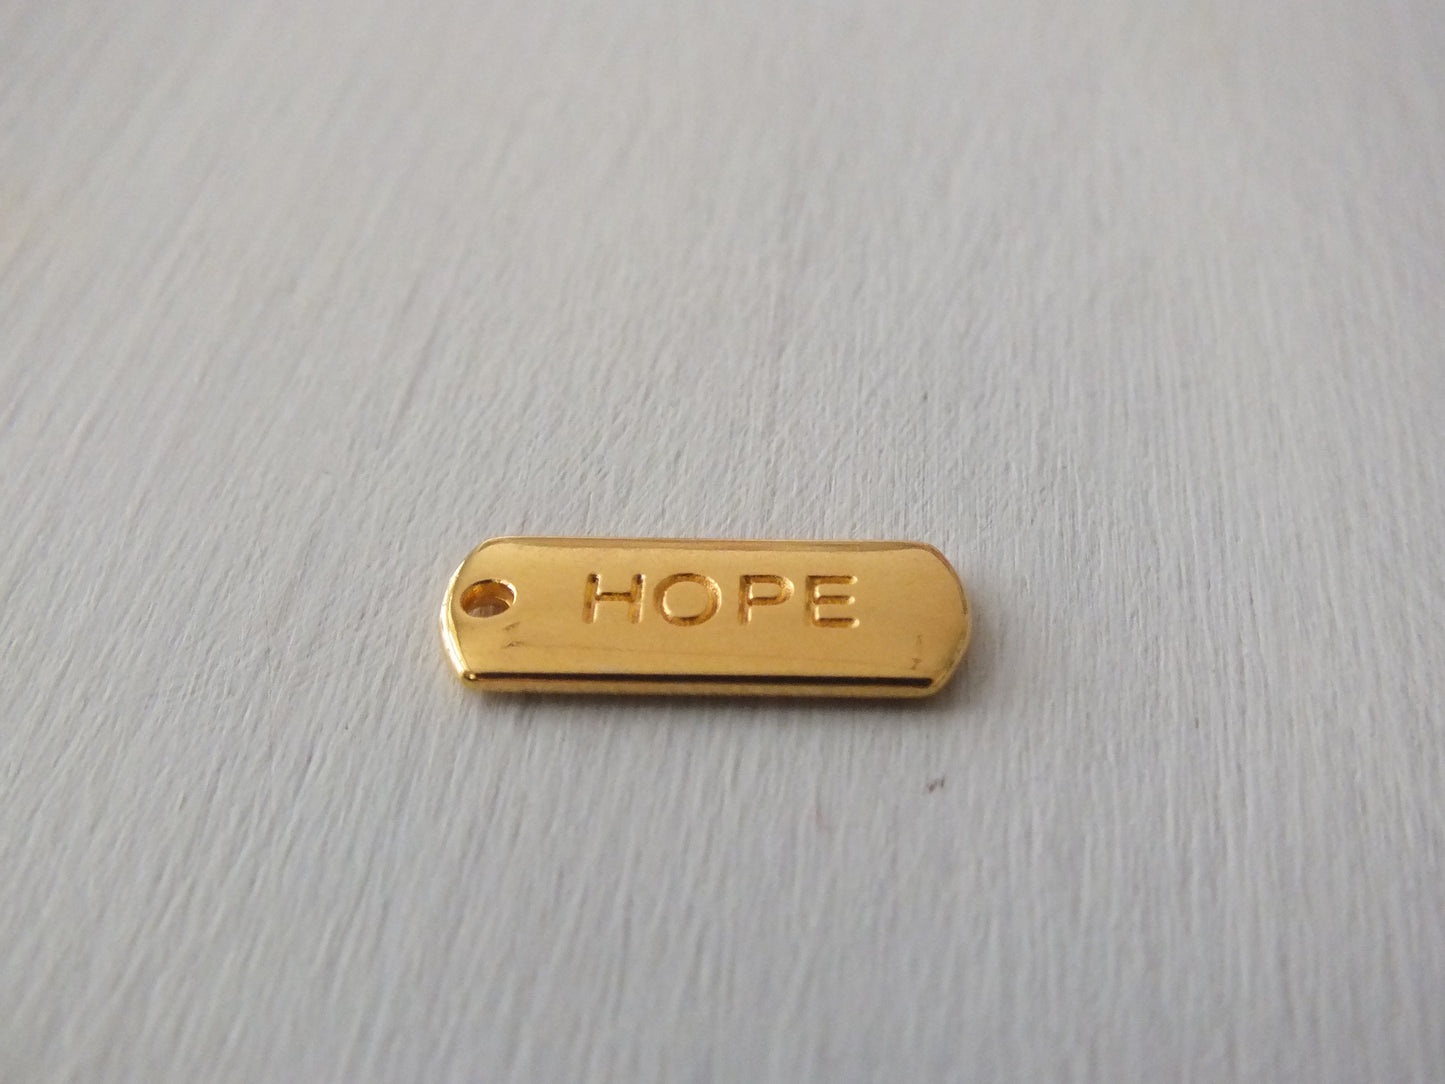 "HOPE" Anhänger in Gold und Silber